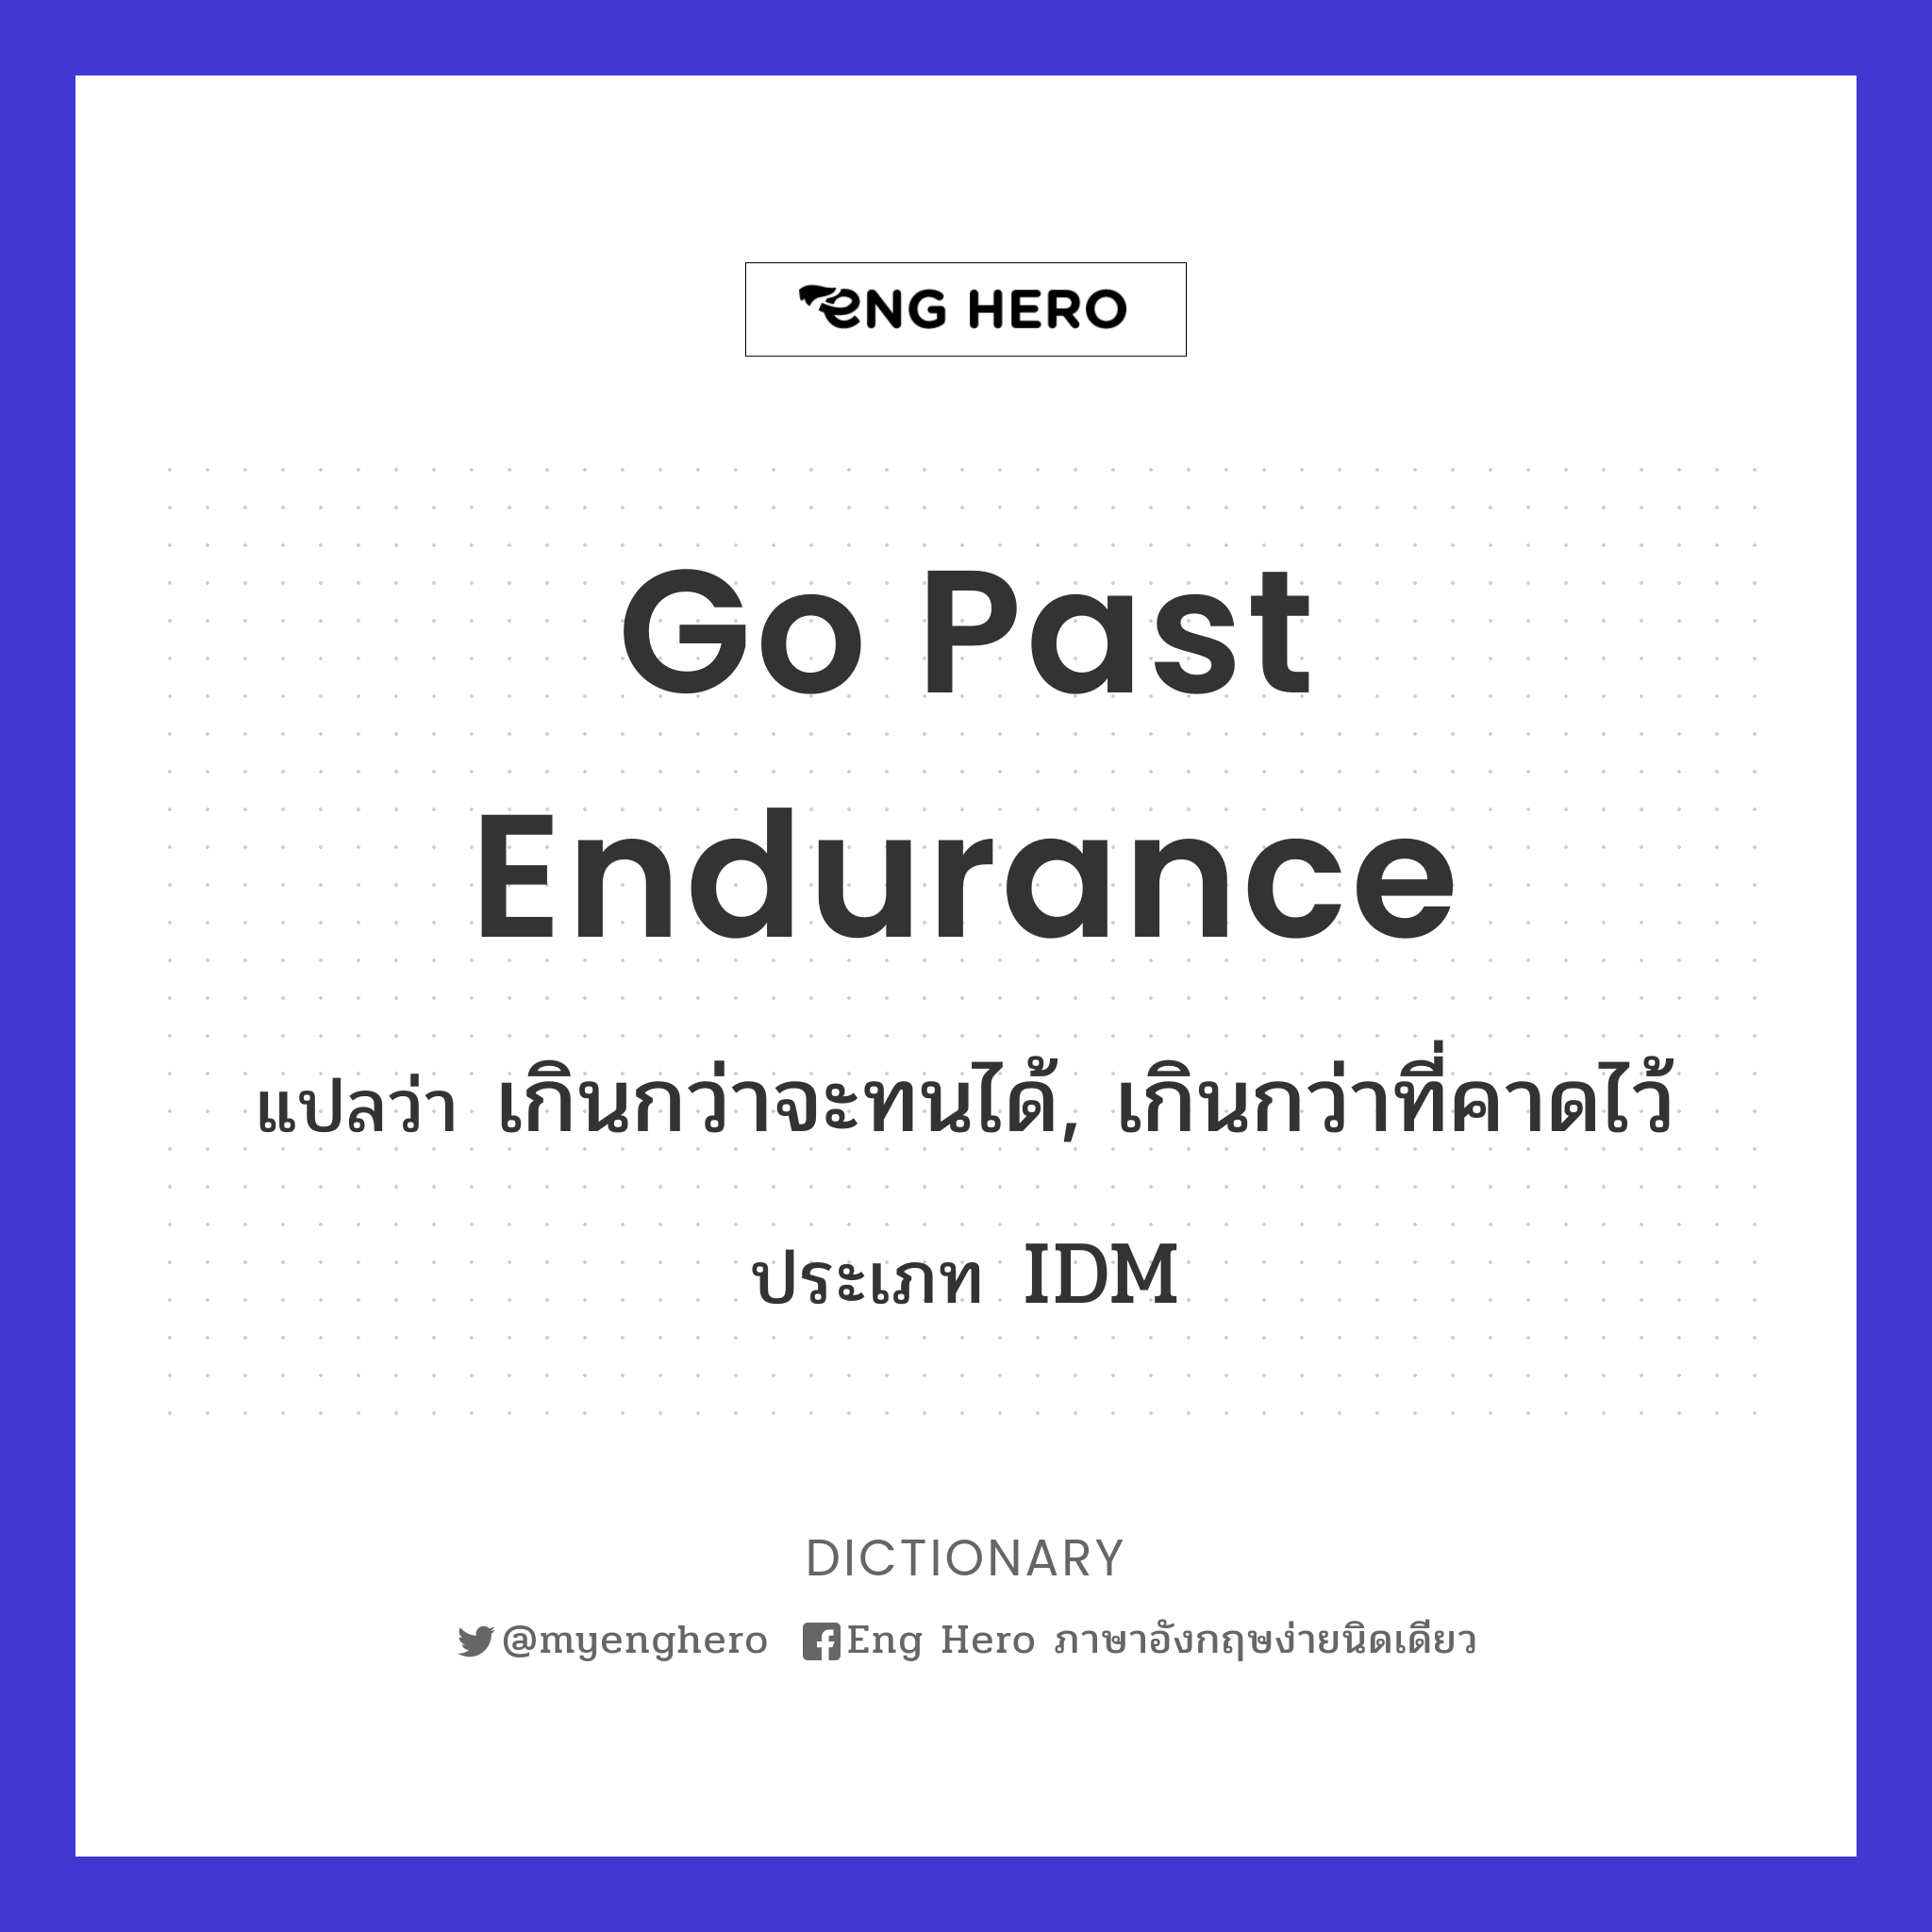 go past endurance